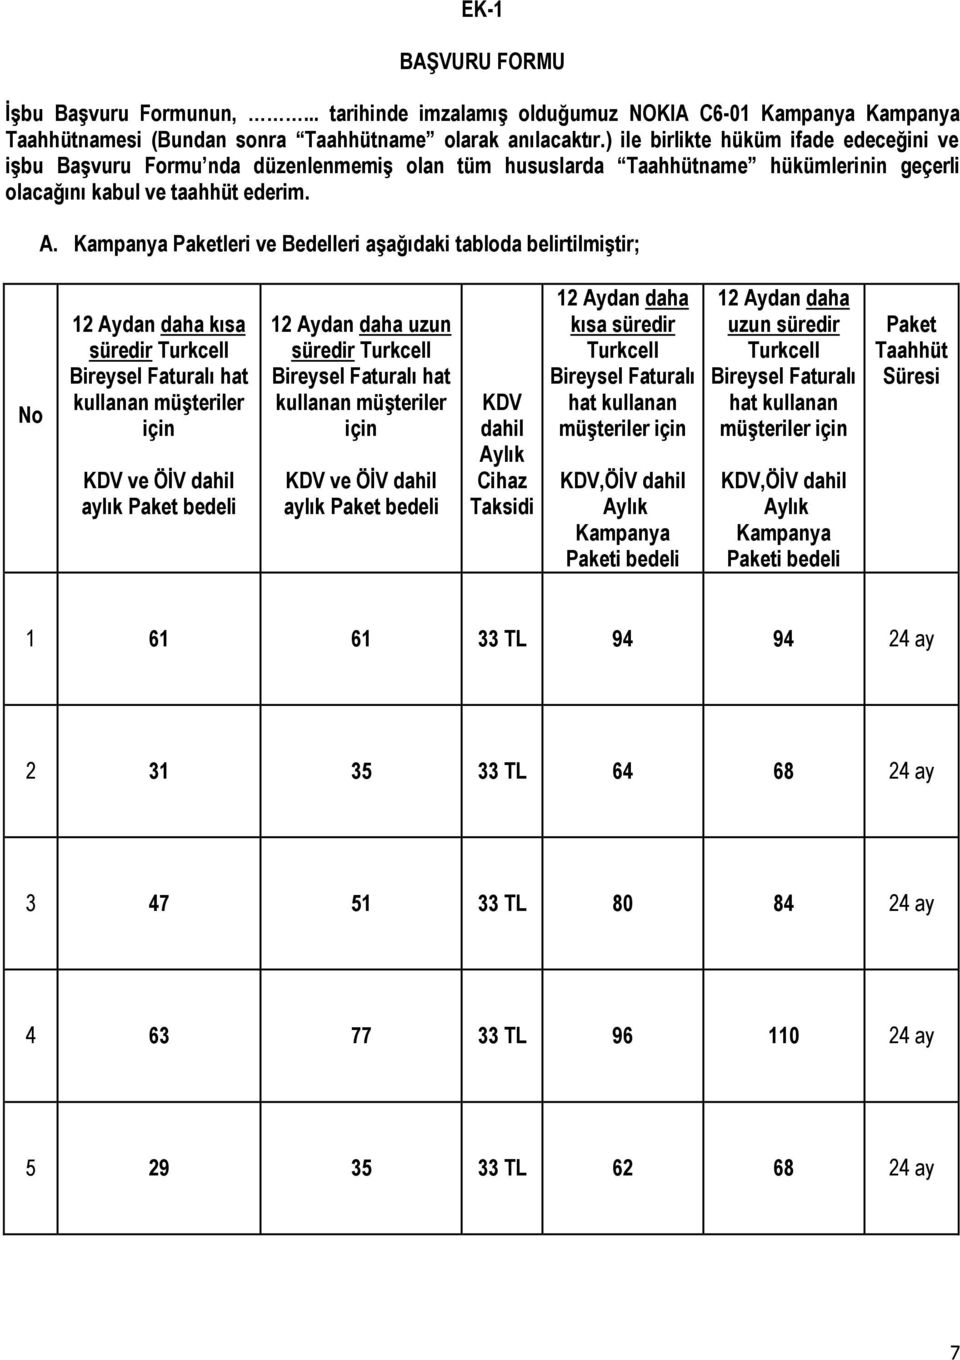 Kampanya Paketleri ve Bedelleri aşağıdaki tabloda belirtilmiştir; No 12 Aydan daha kısa süredir Turkcell Bireysel Faturalı hat kullanan müşteriler için KDV ve ÖİV dahil aylık Paket bedeli 12 Aydan